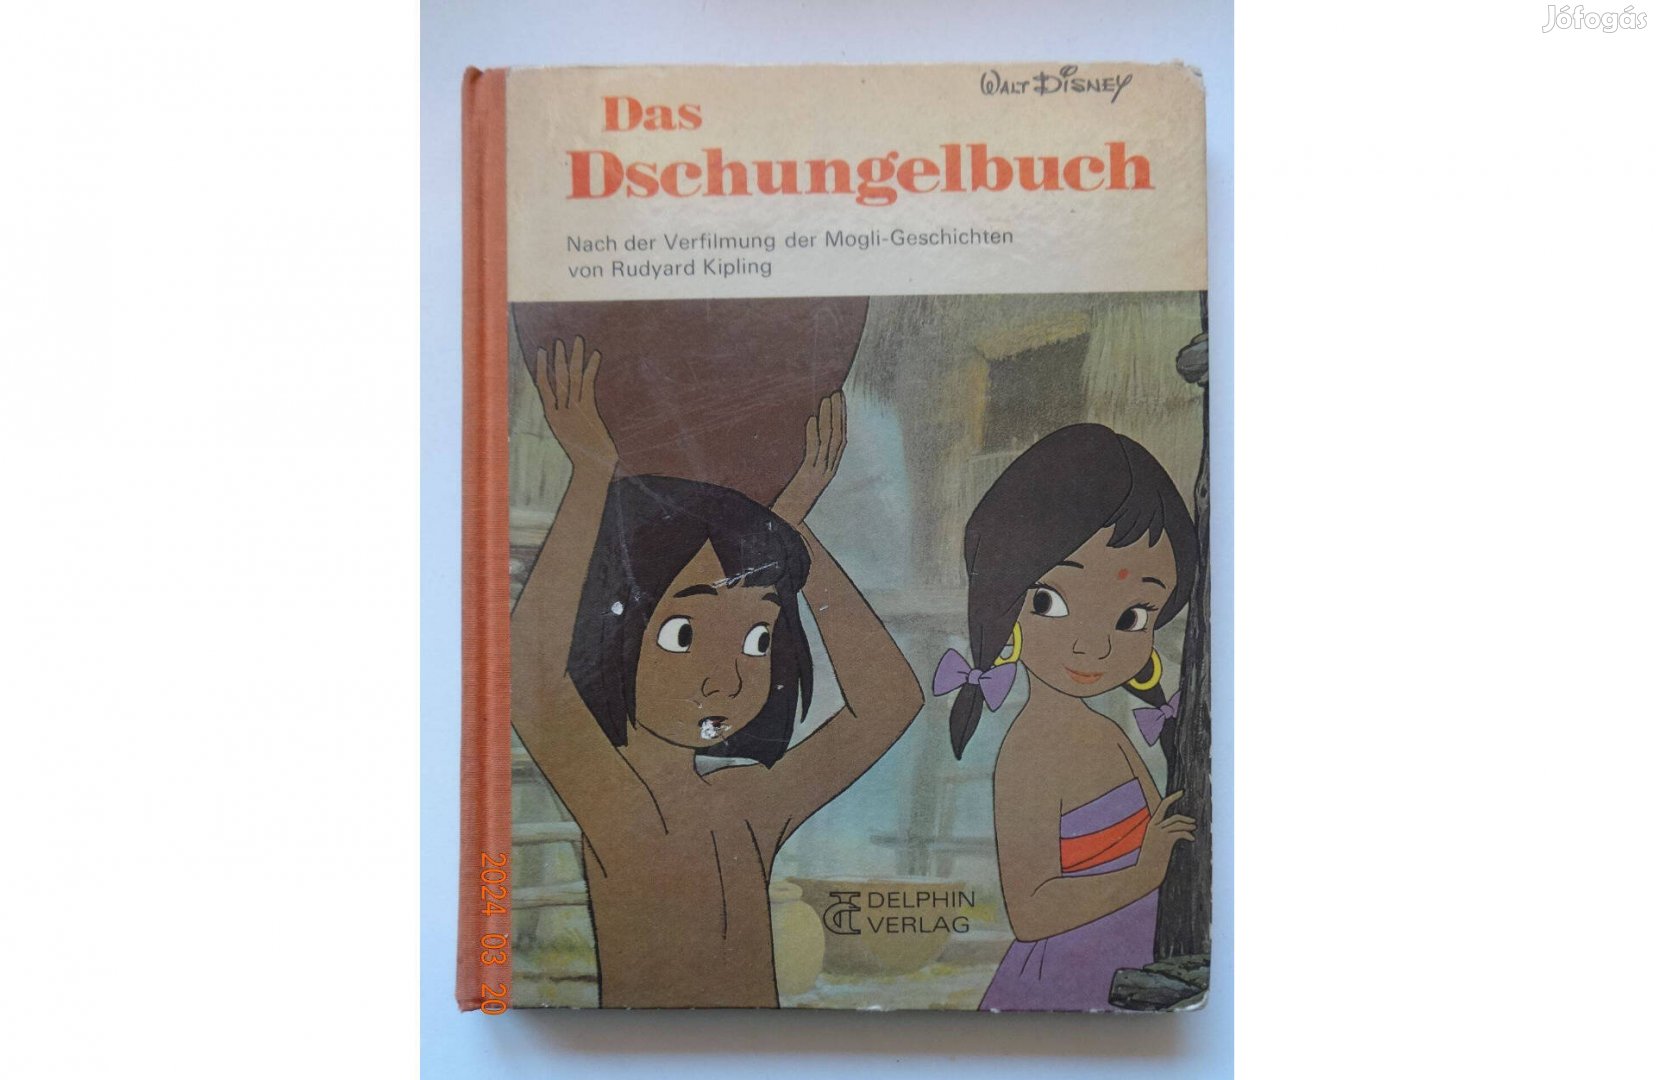 Walt Disney: A dzsungel könyve (Das Dschungelbuch) - német nyelvű régi